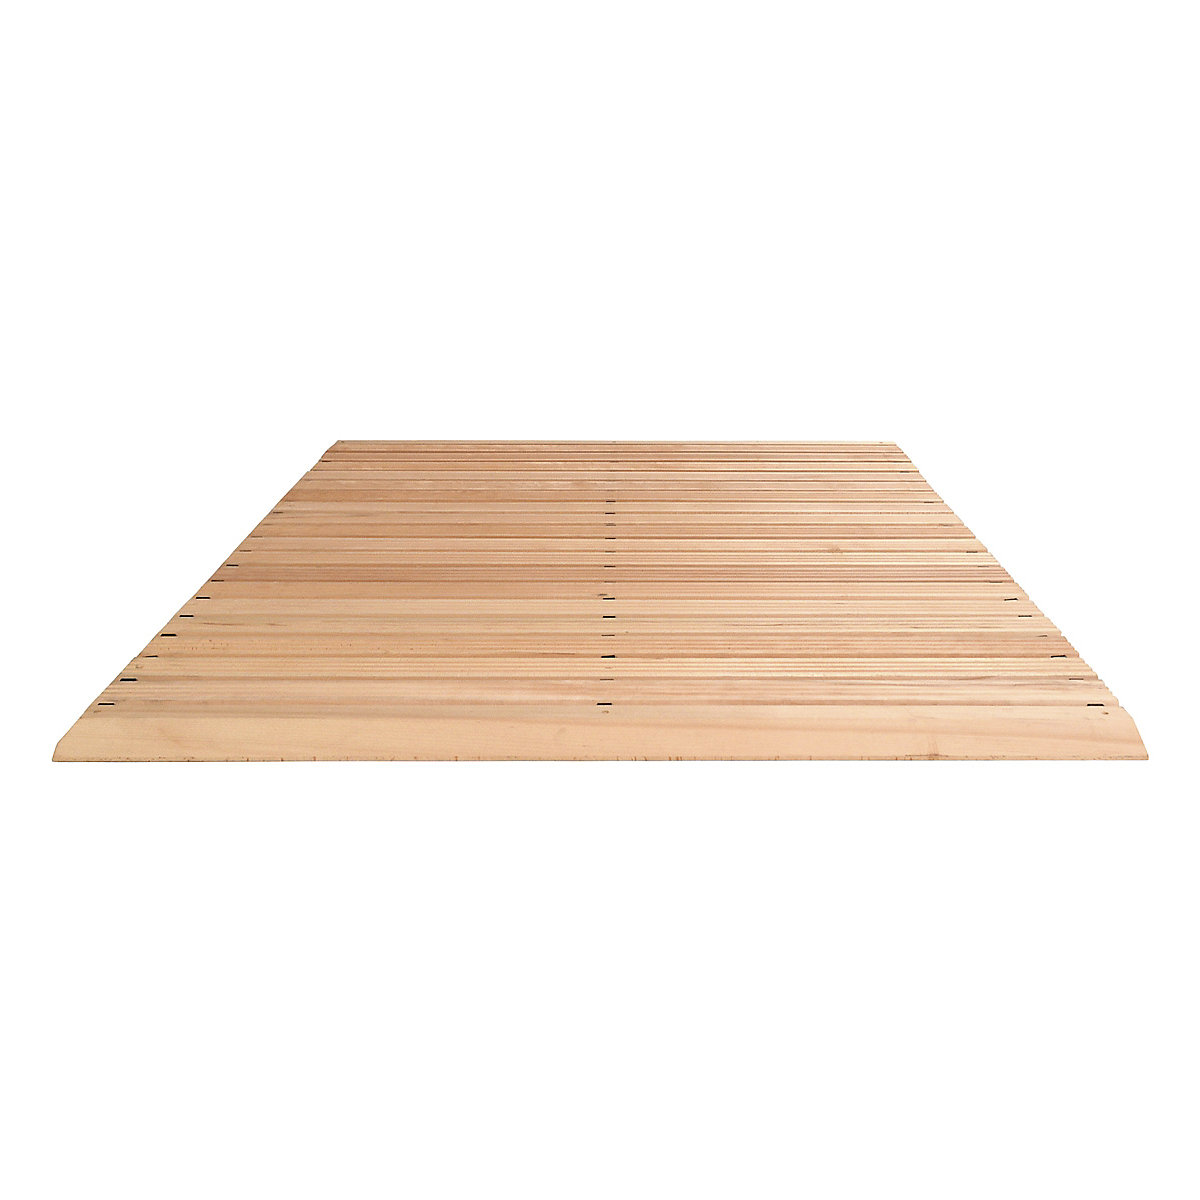 Holzlaufrost, pro lfd. m, mit Anschrägung an 3 Seiten, Breite 1500 mm